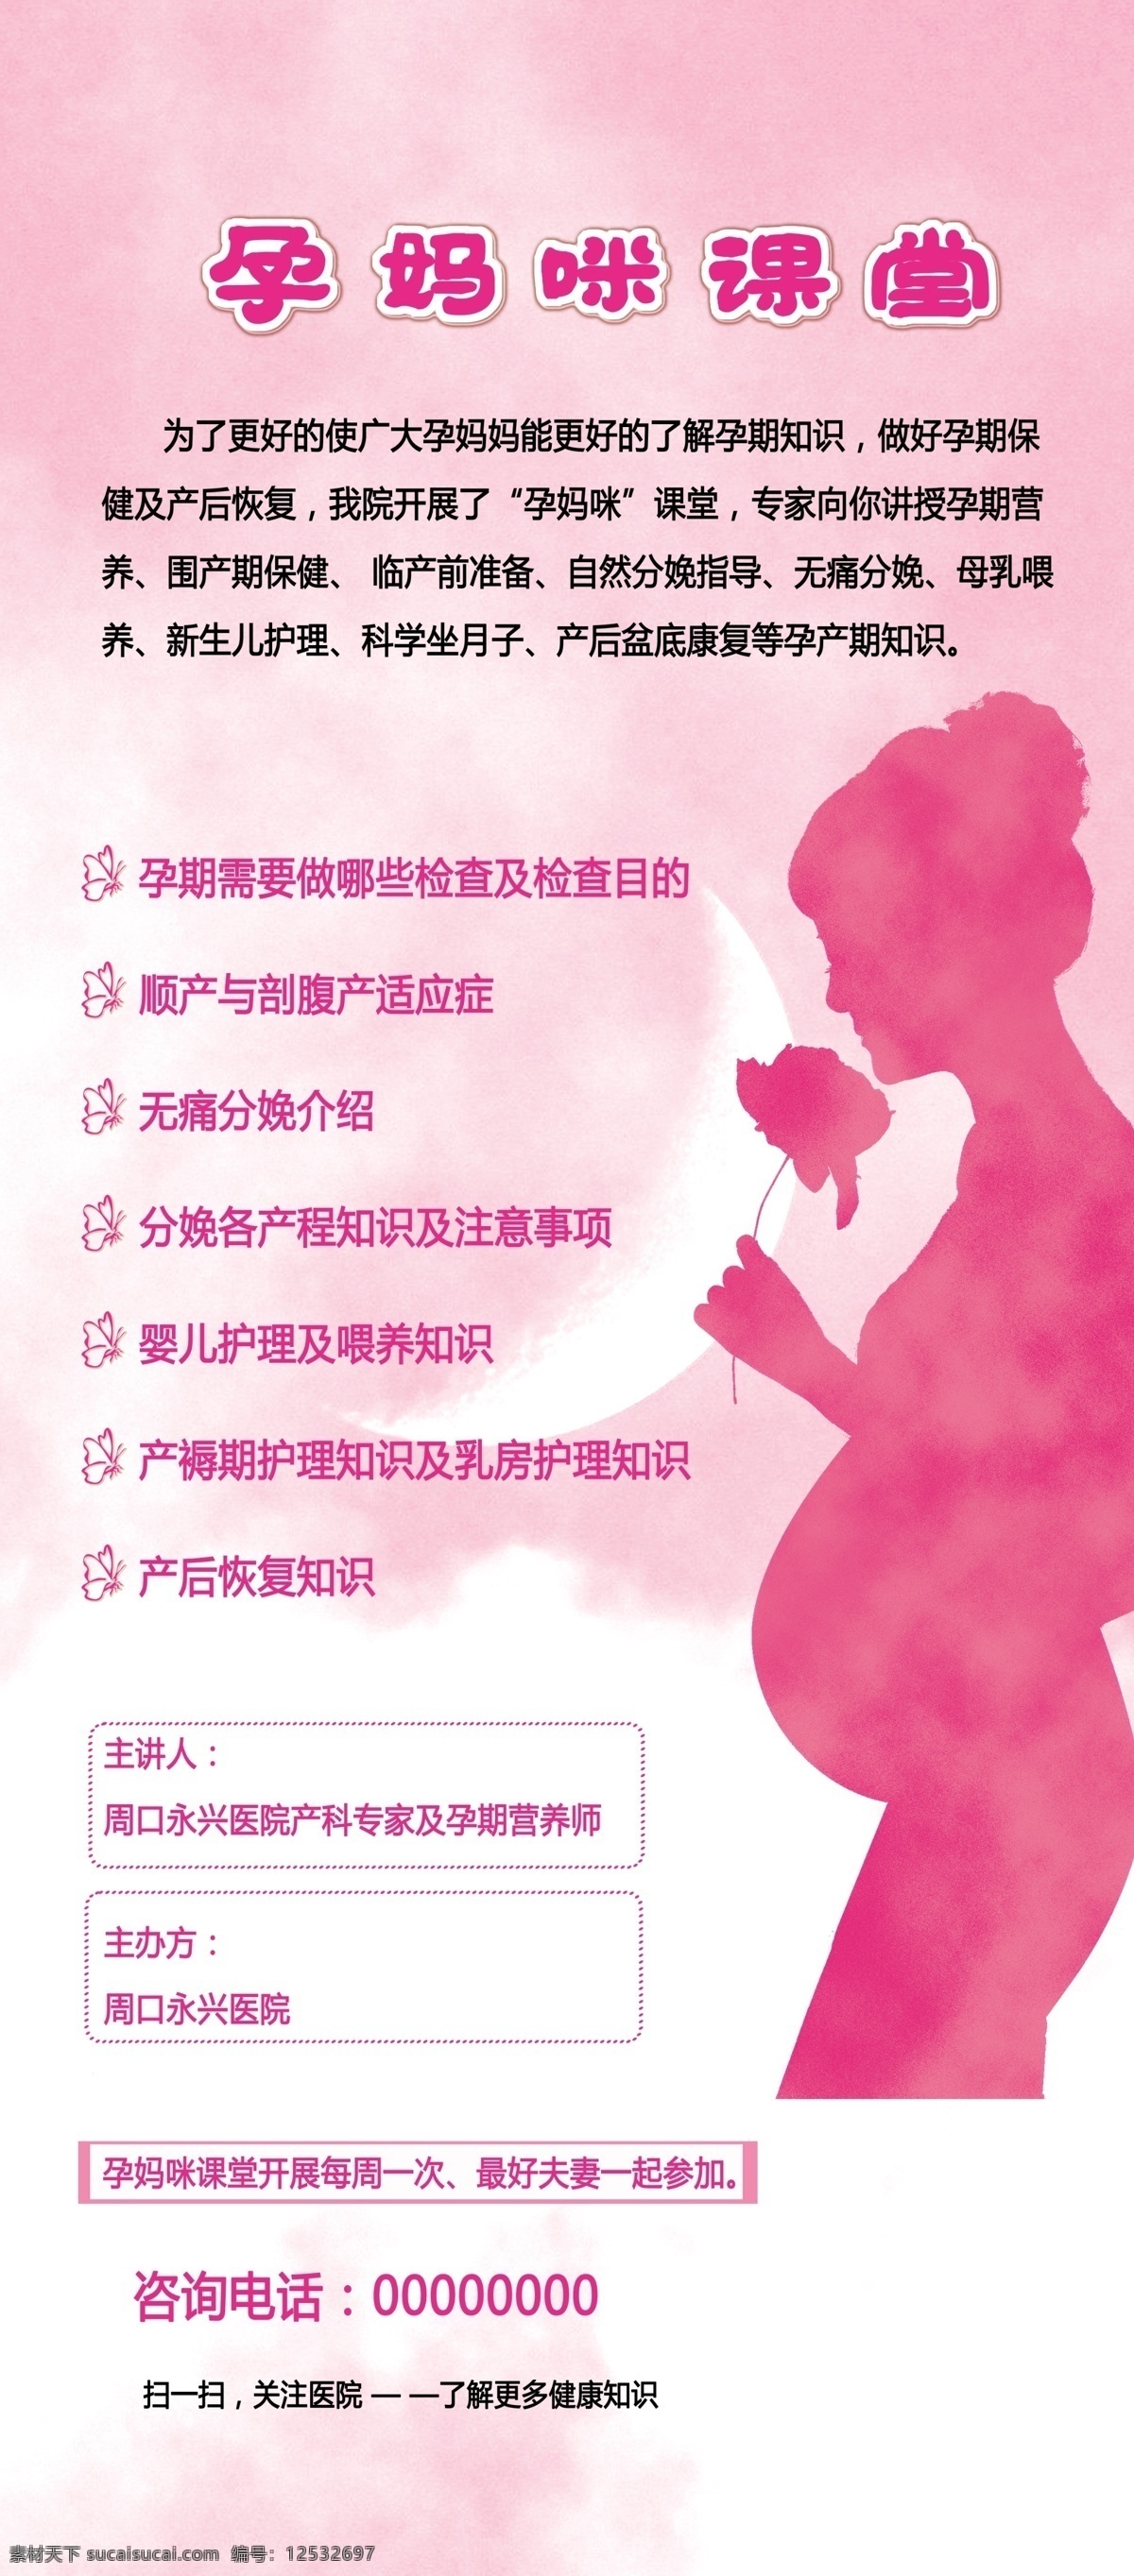 孕妈咪课堂 产妇 孕期知识 孕期营养 检查项目 顺产 刨腹产 分娩知识 婴儿护理 喂养